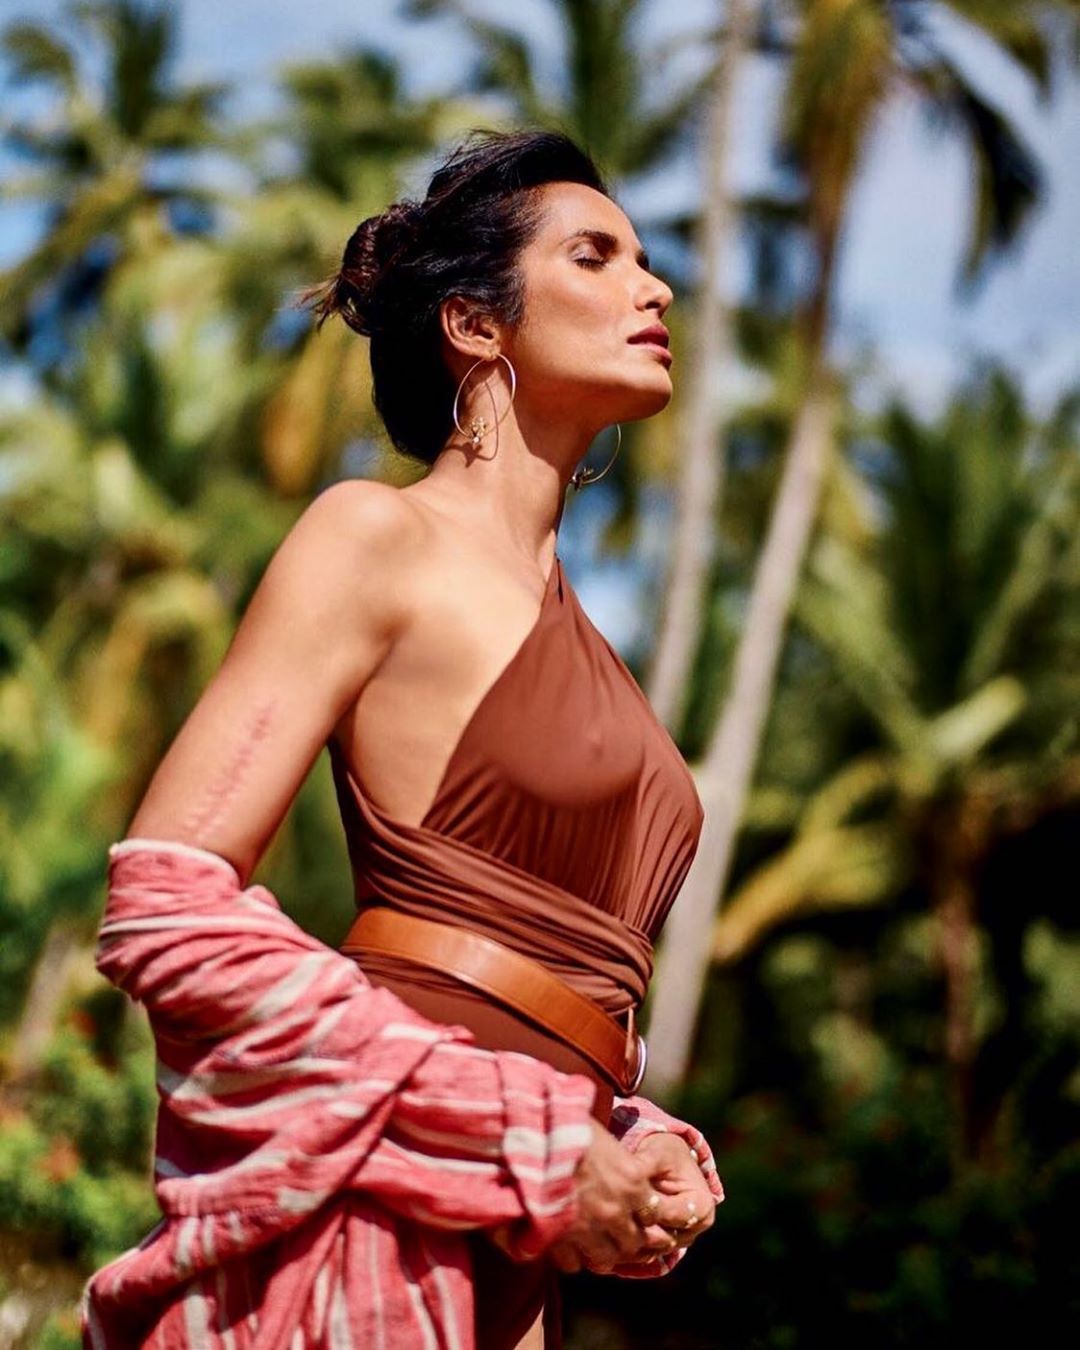 Padma Lakshmi Sexy & Topless (83 P
hotos)